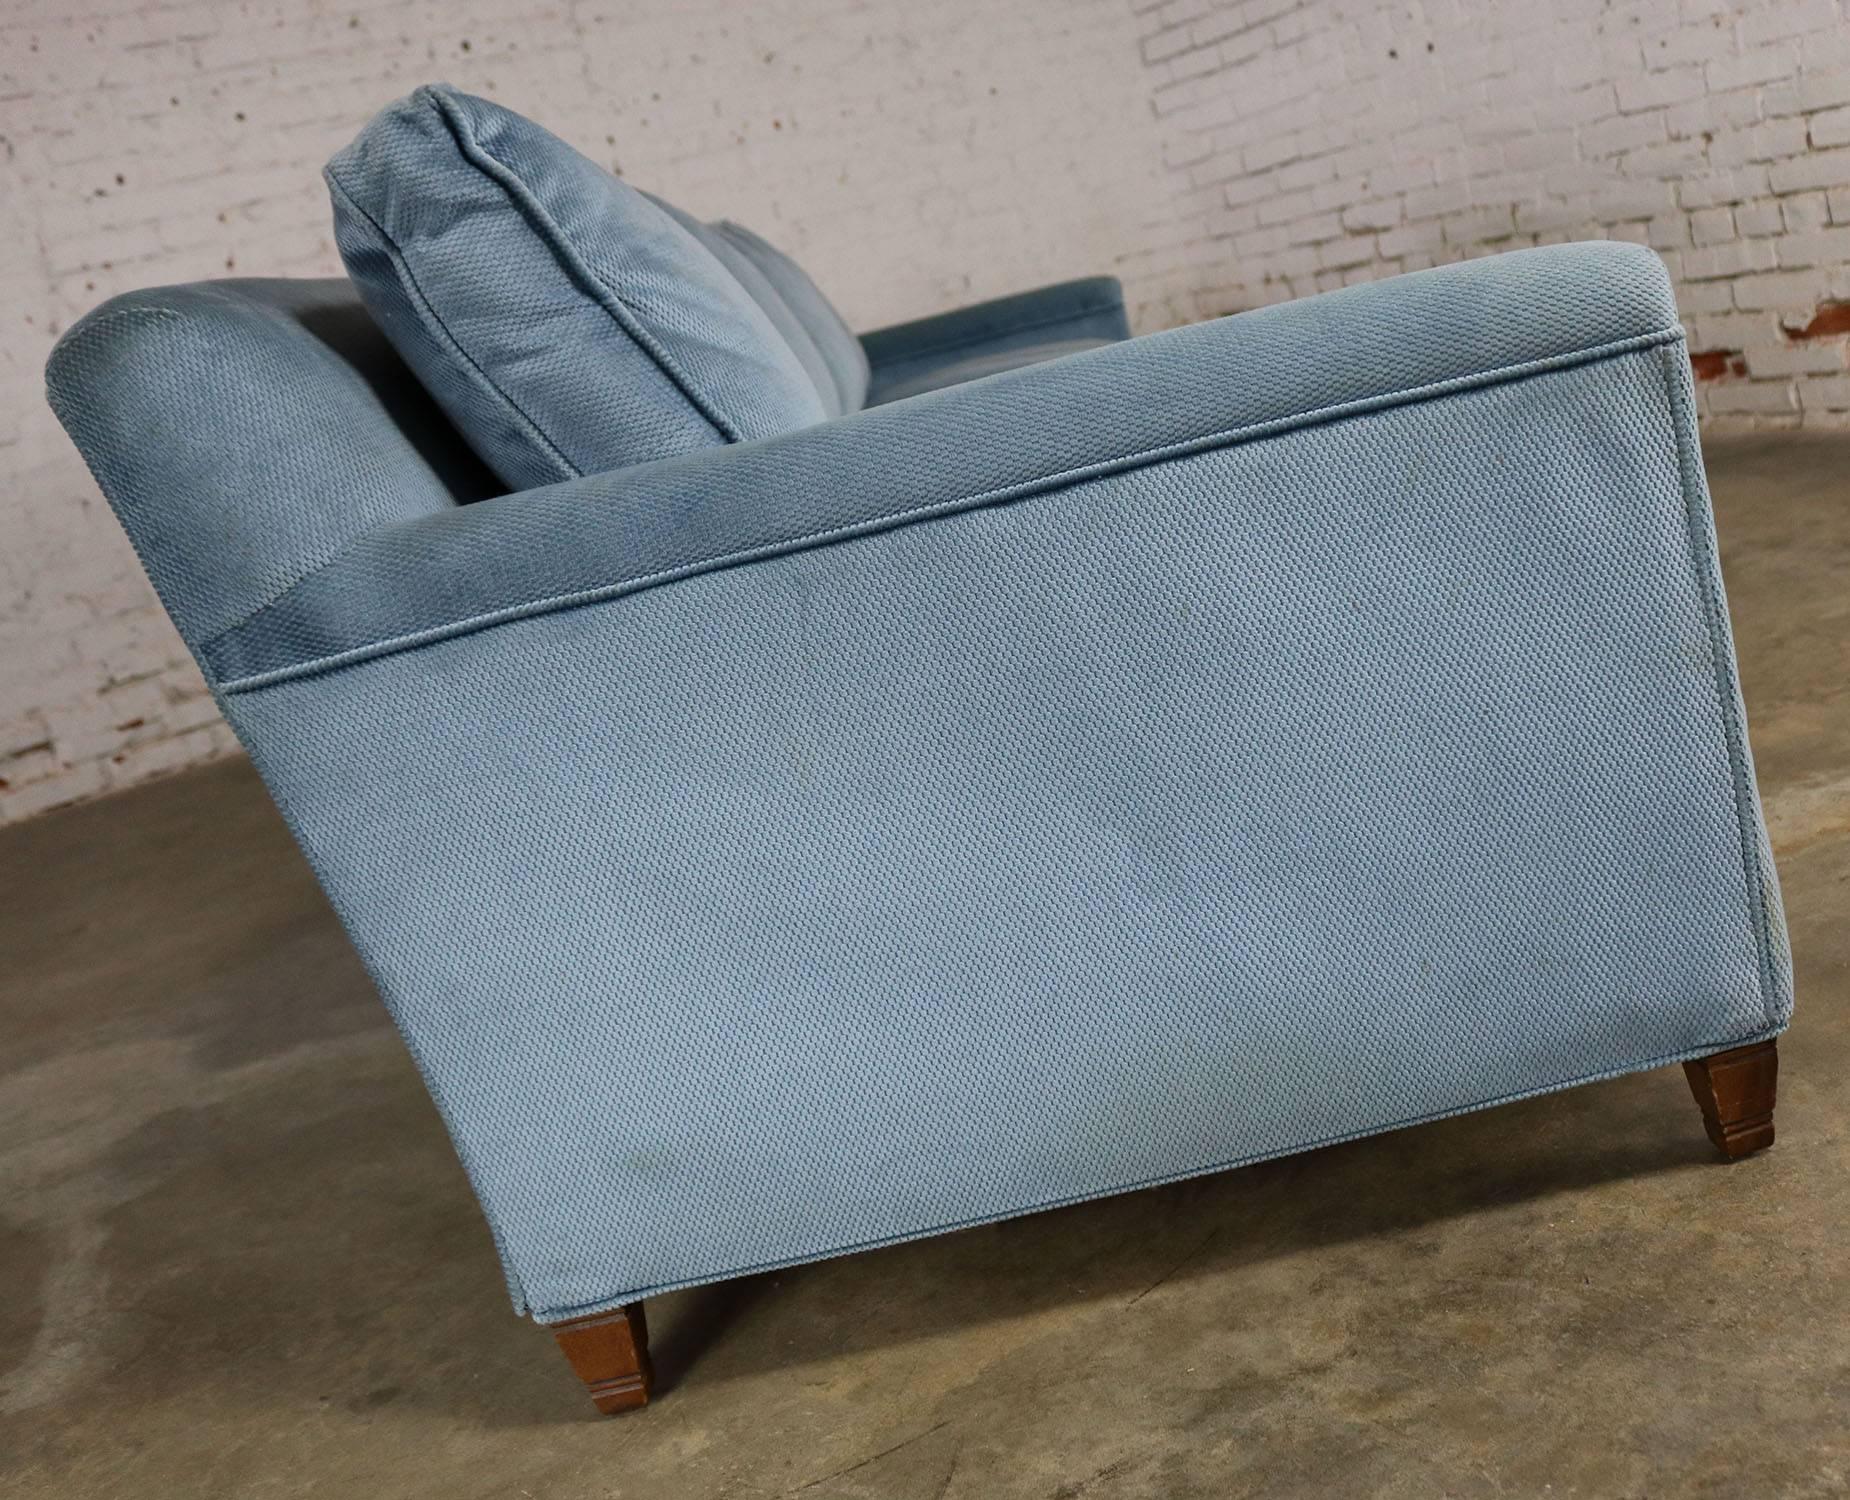 Fabric Powder Blue Lawson Style Four Cushion Sofa Vintage, Mid-Century Modern